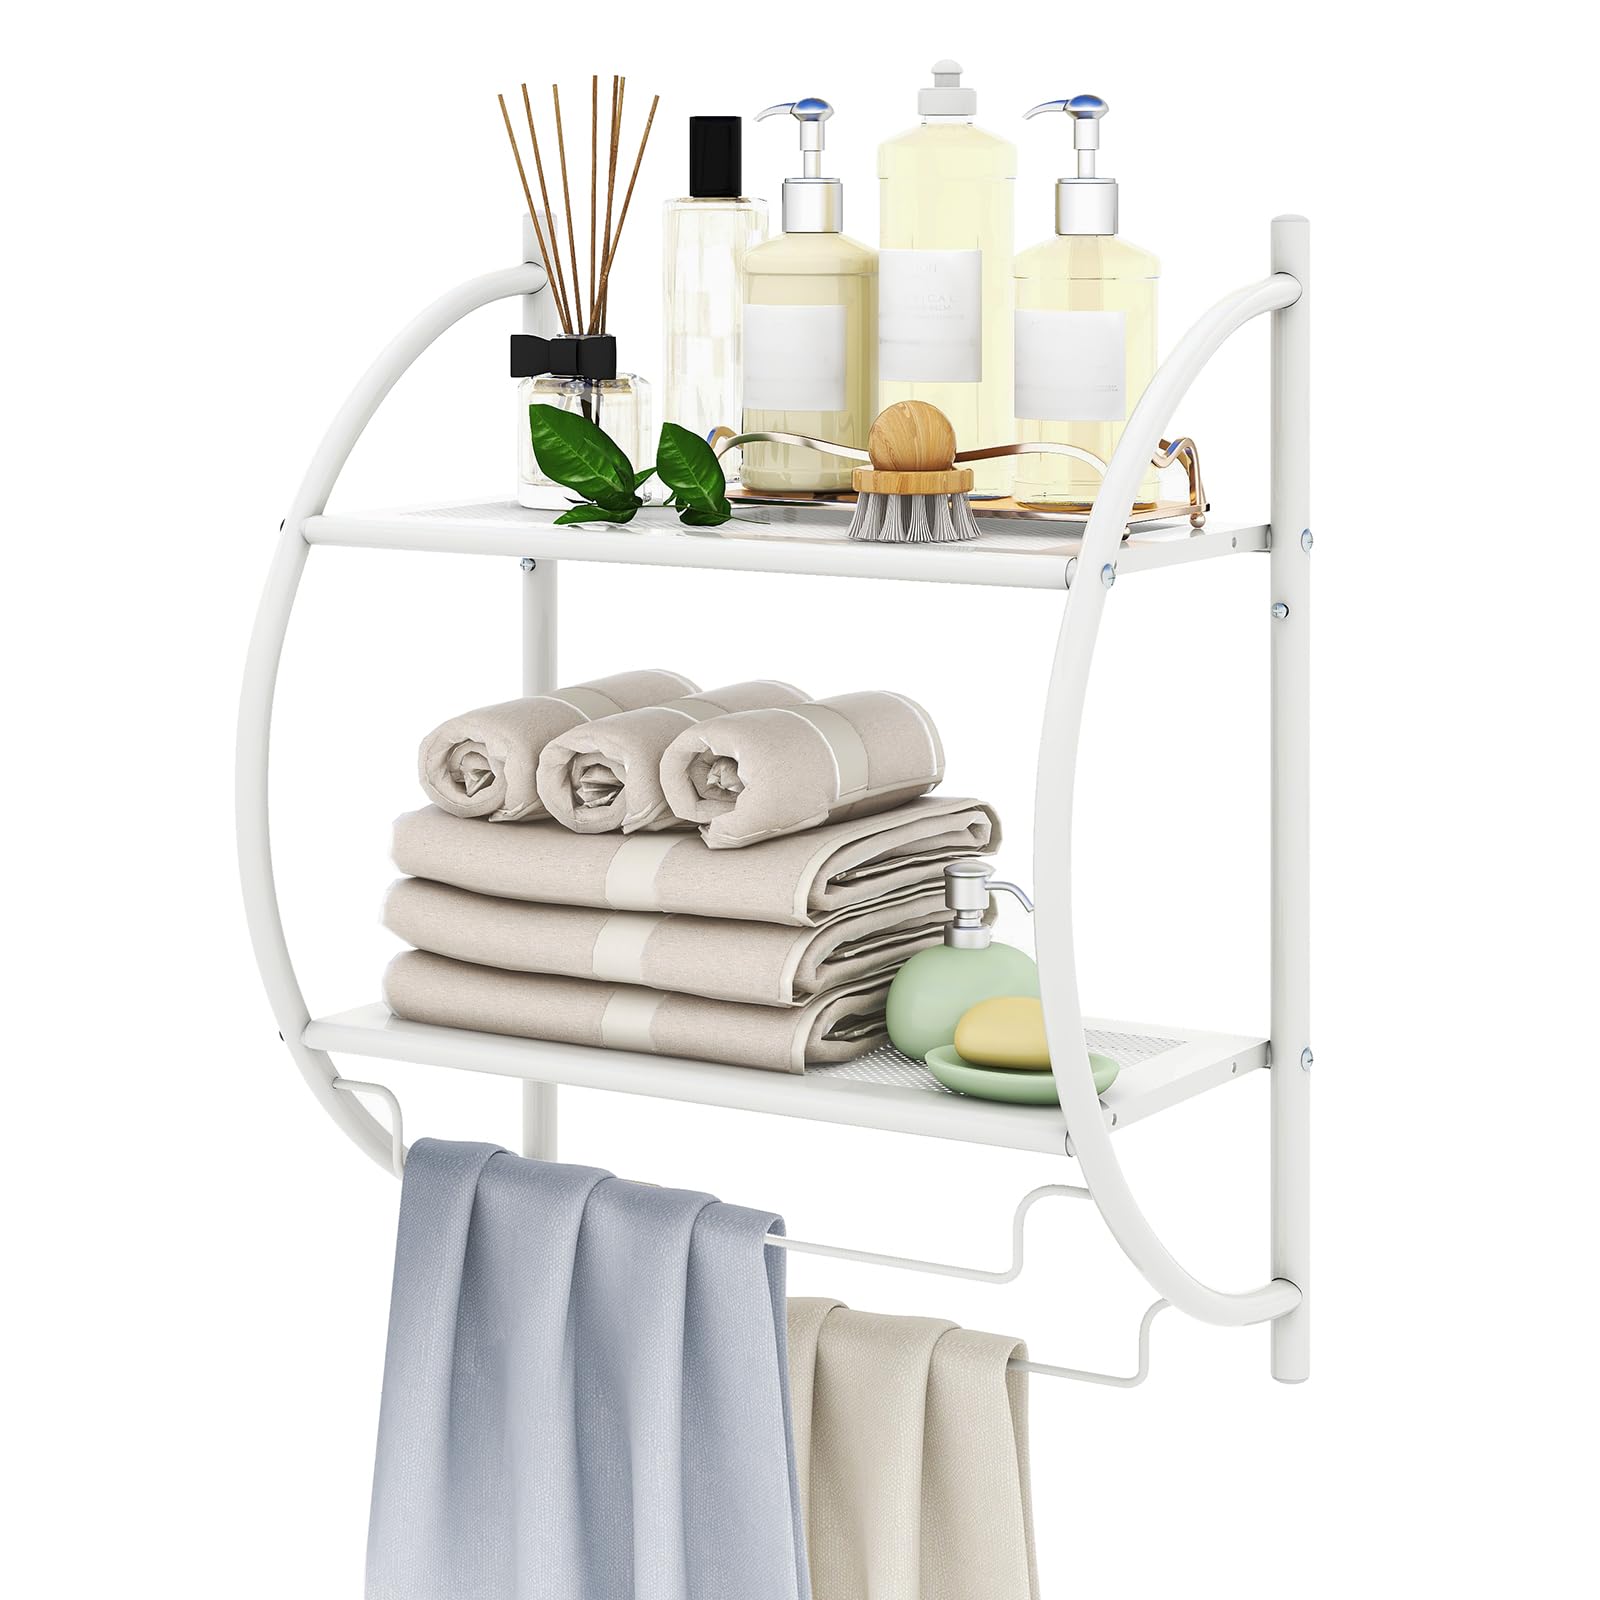 Giantex Bathroom Shelf with Towel Rack - 2 Tier Rustproof Over The Toilet Storage Shelf